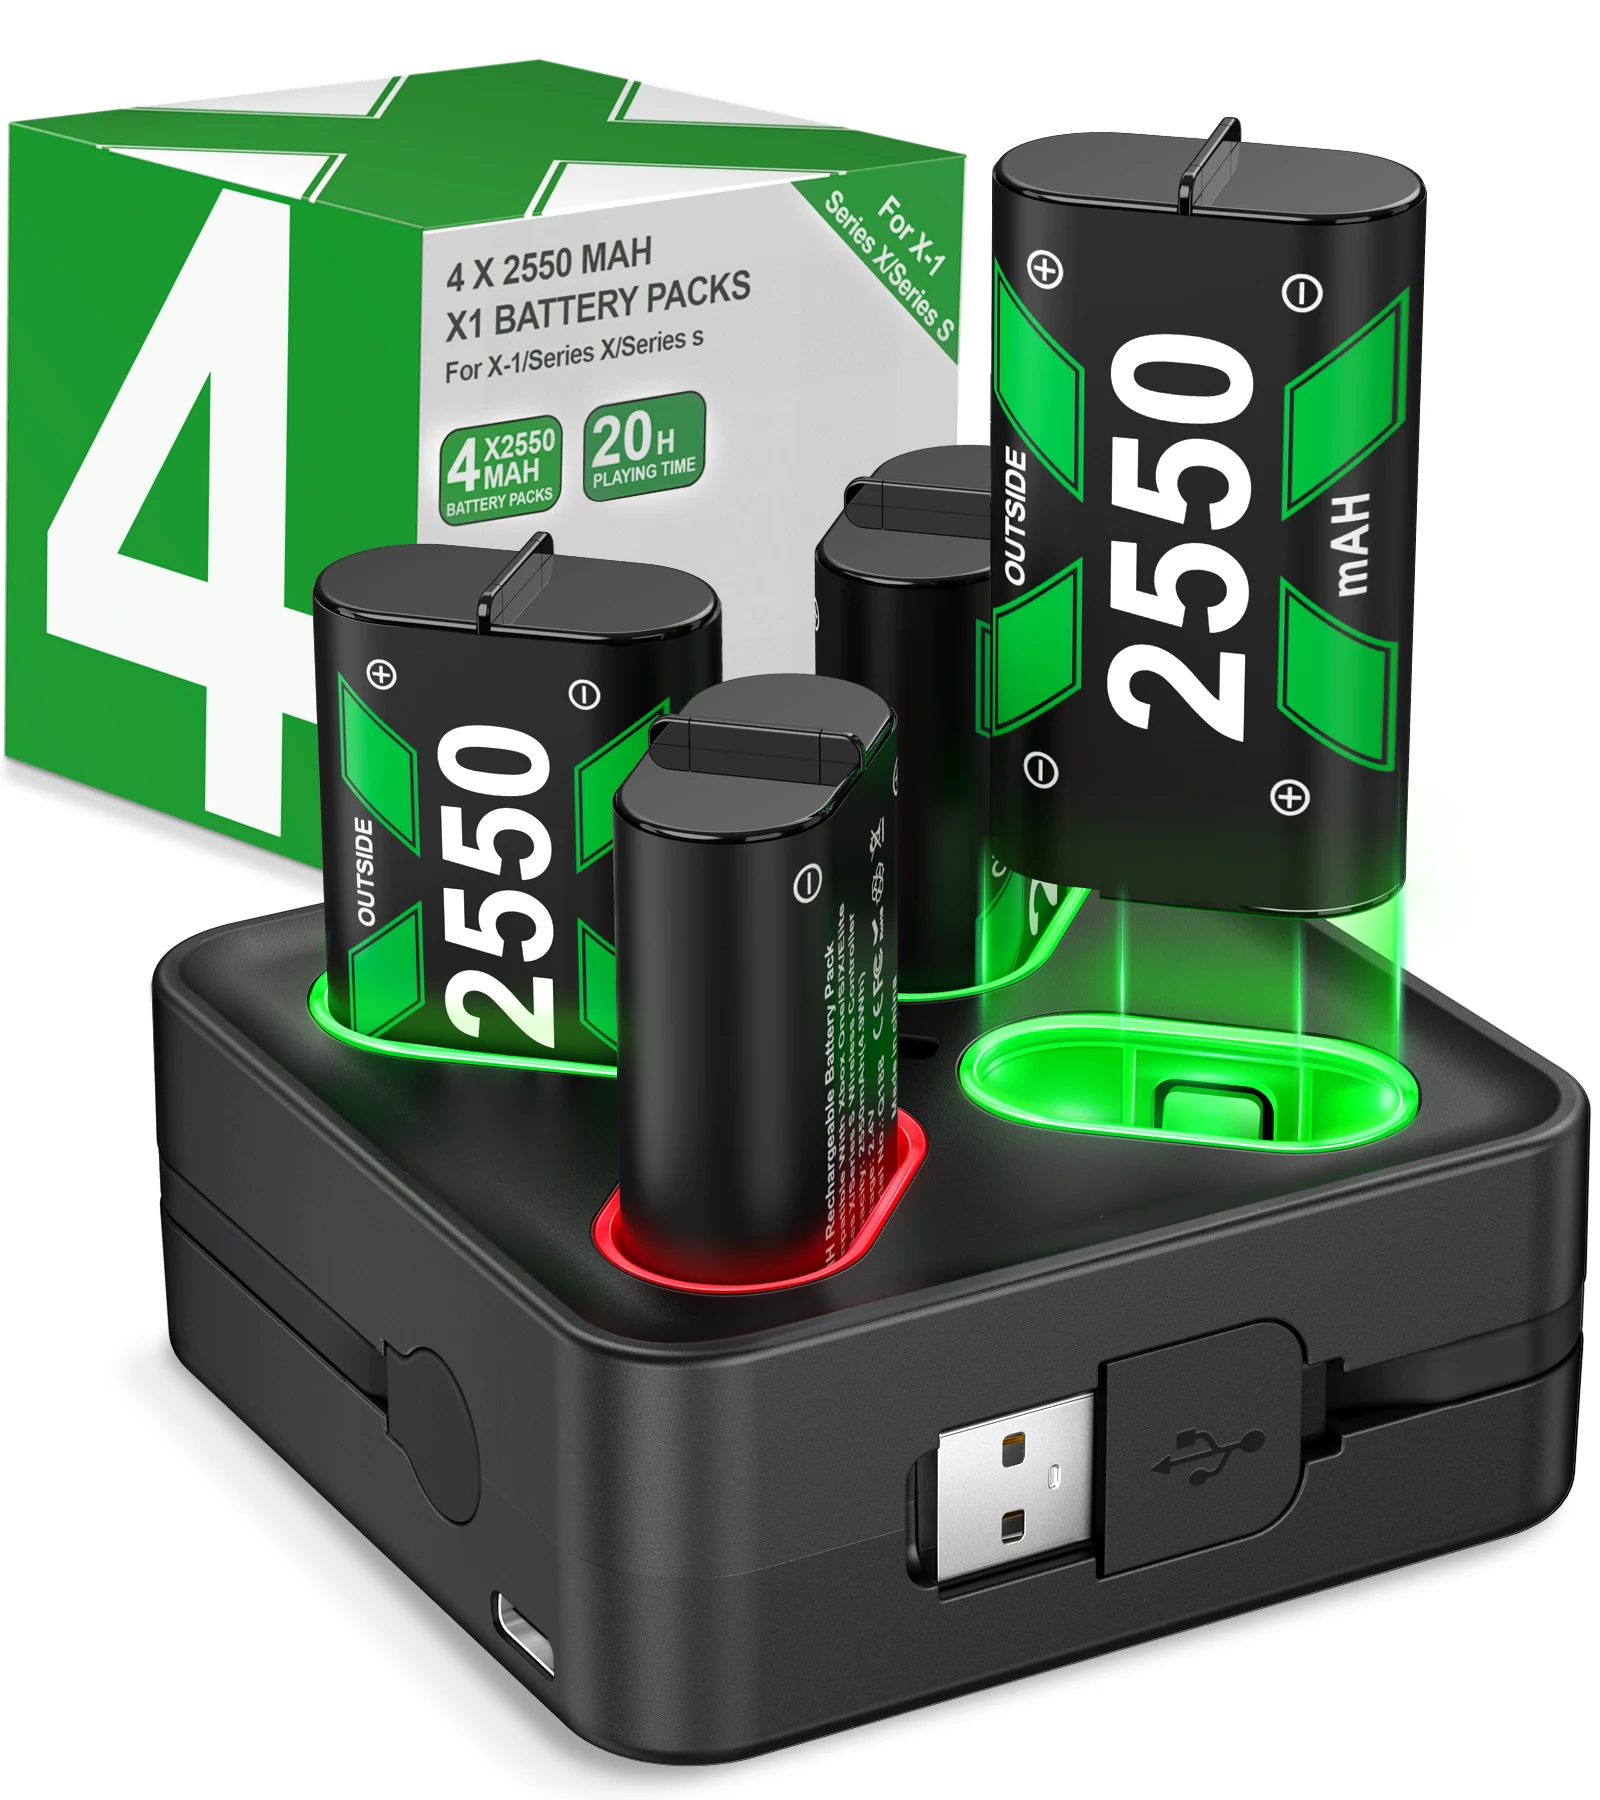 Batería recargable de 4x2550mAh para Xbox One, paquete de batería de controlador...